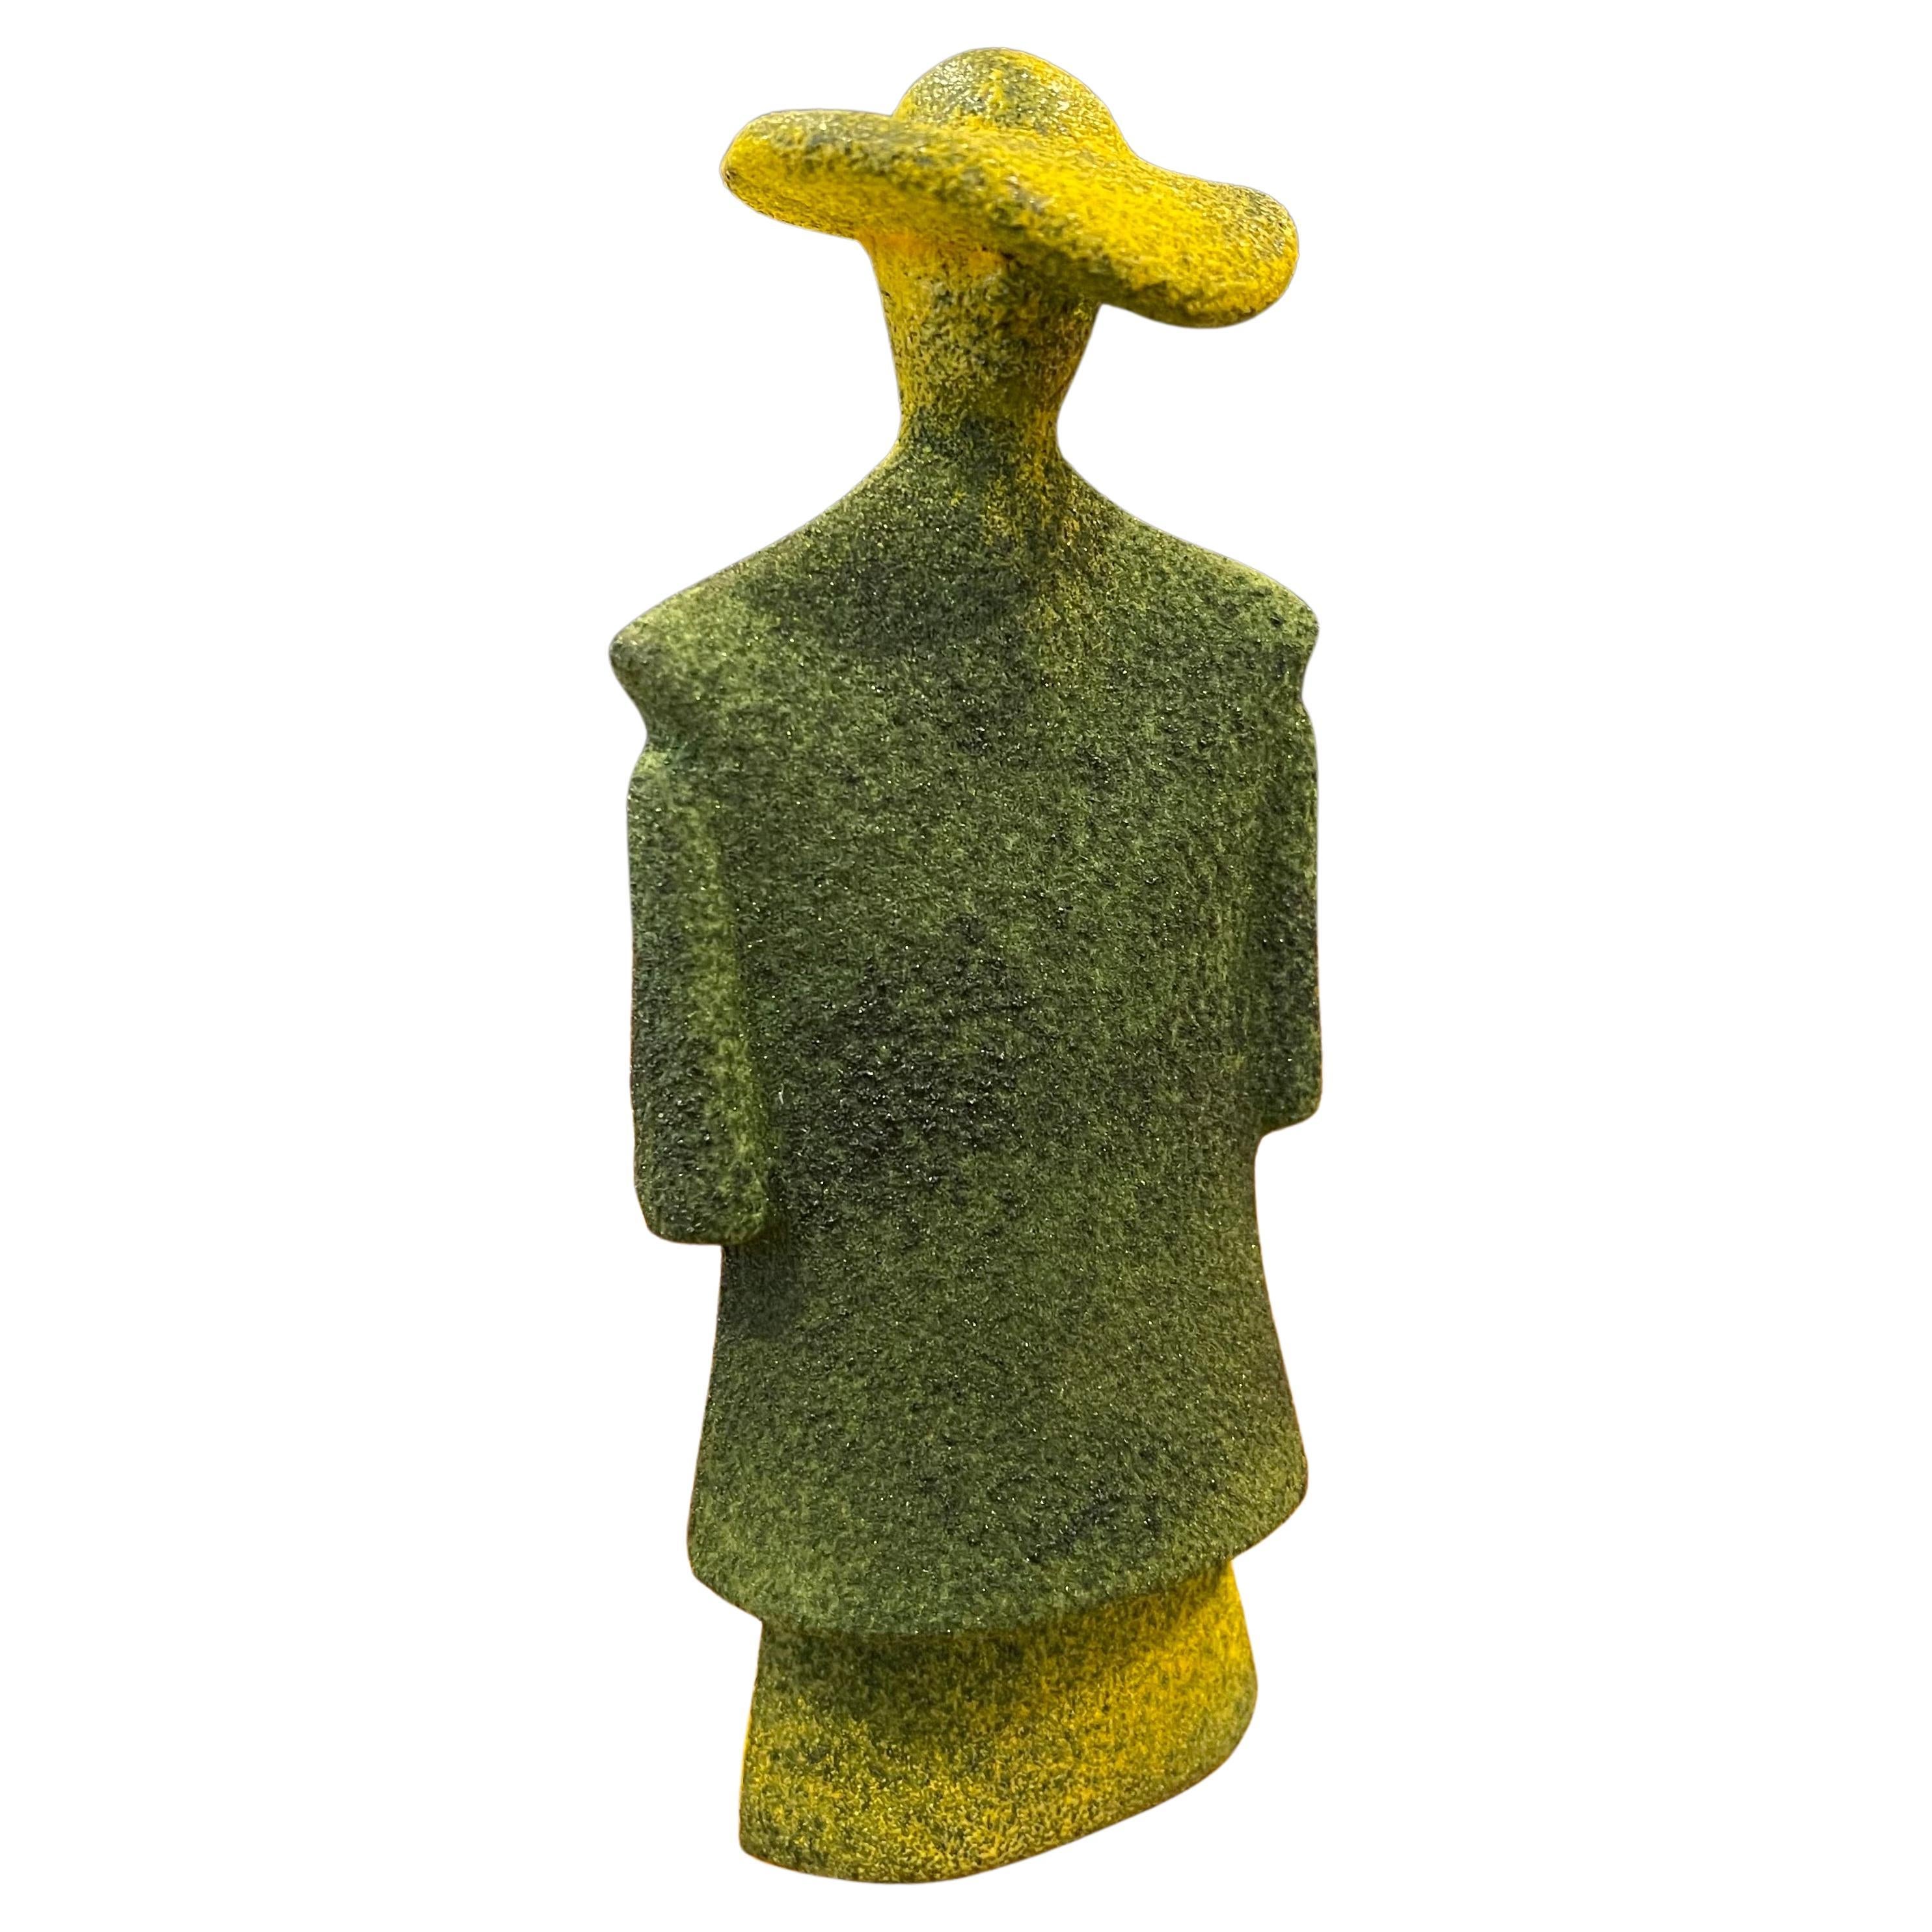 Poncho Green Art Glass Catwalk Sculpture by Kjell Engman for Kosta Boda Sweden For Sale